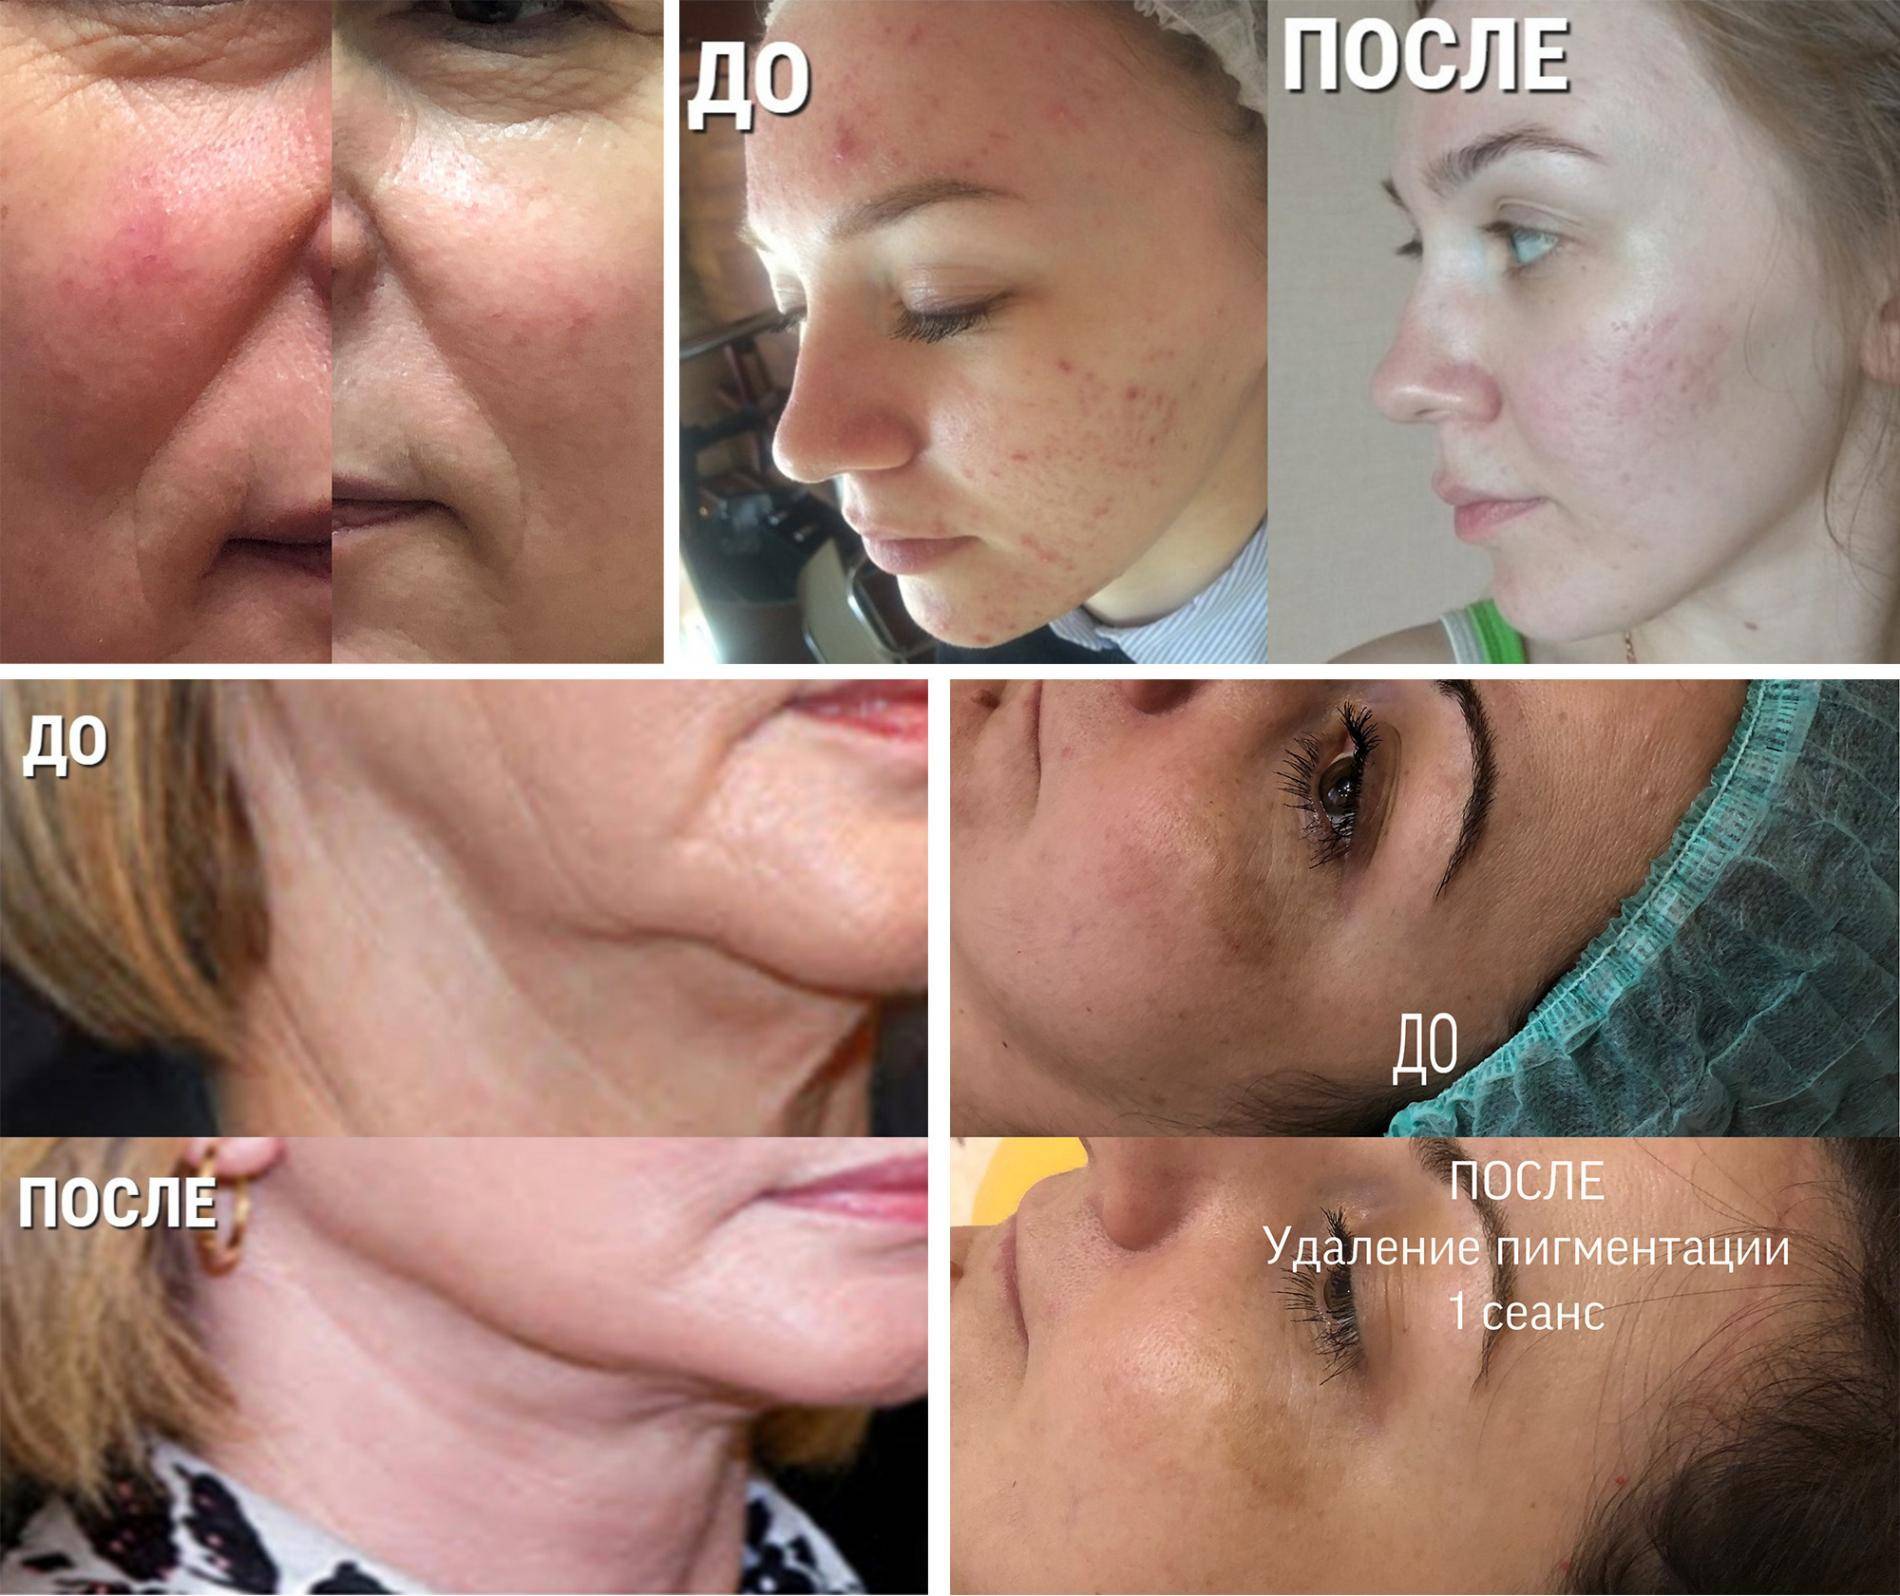 Аквашайн биоревитализация * отзывы косметологов с фото до и после клиентов